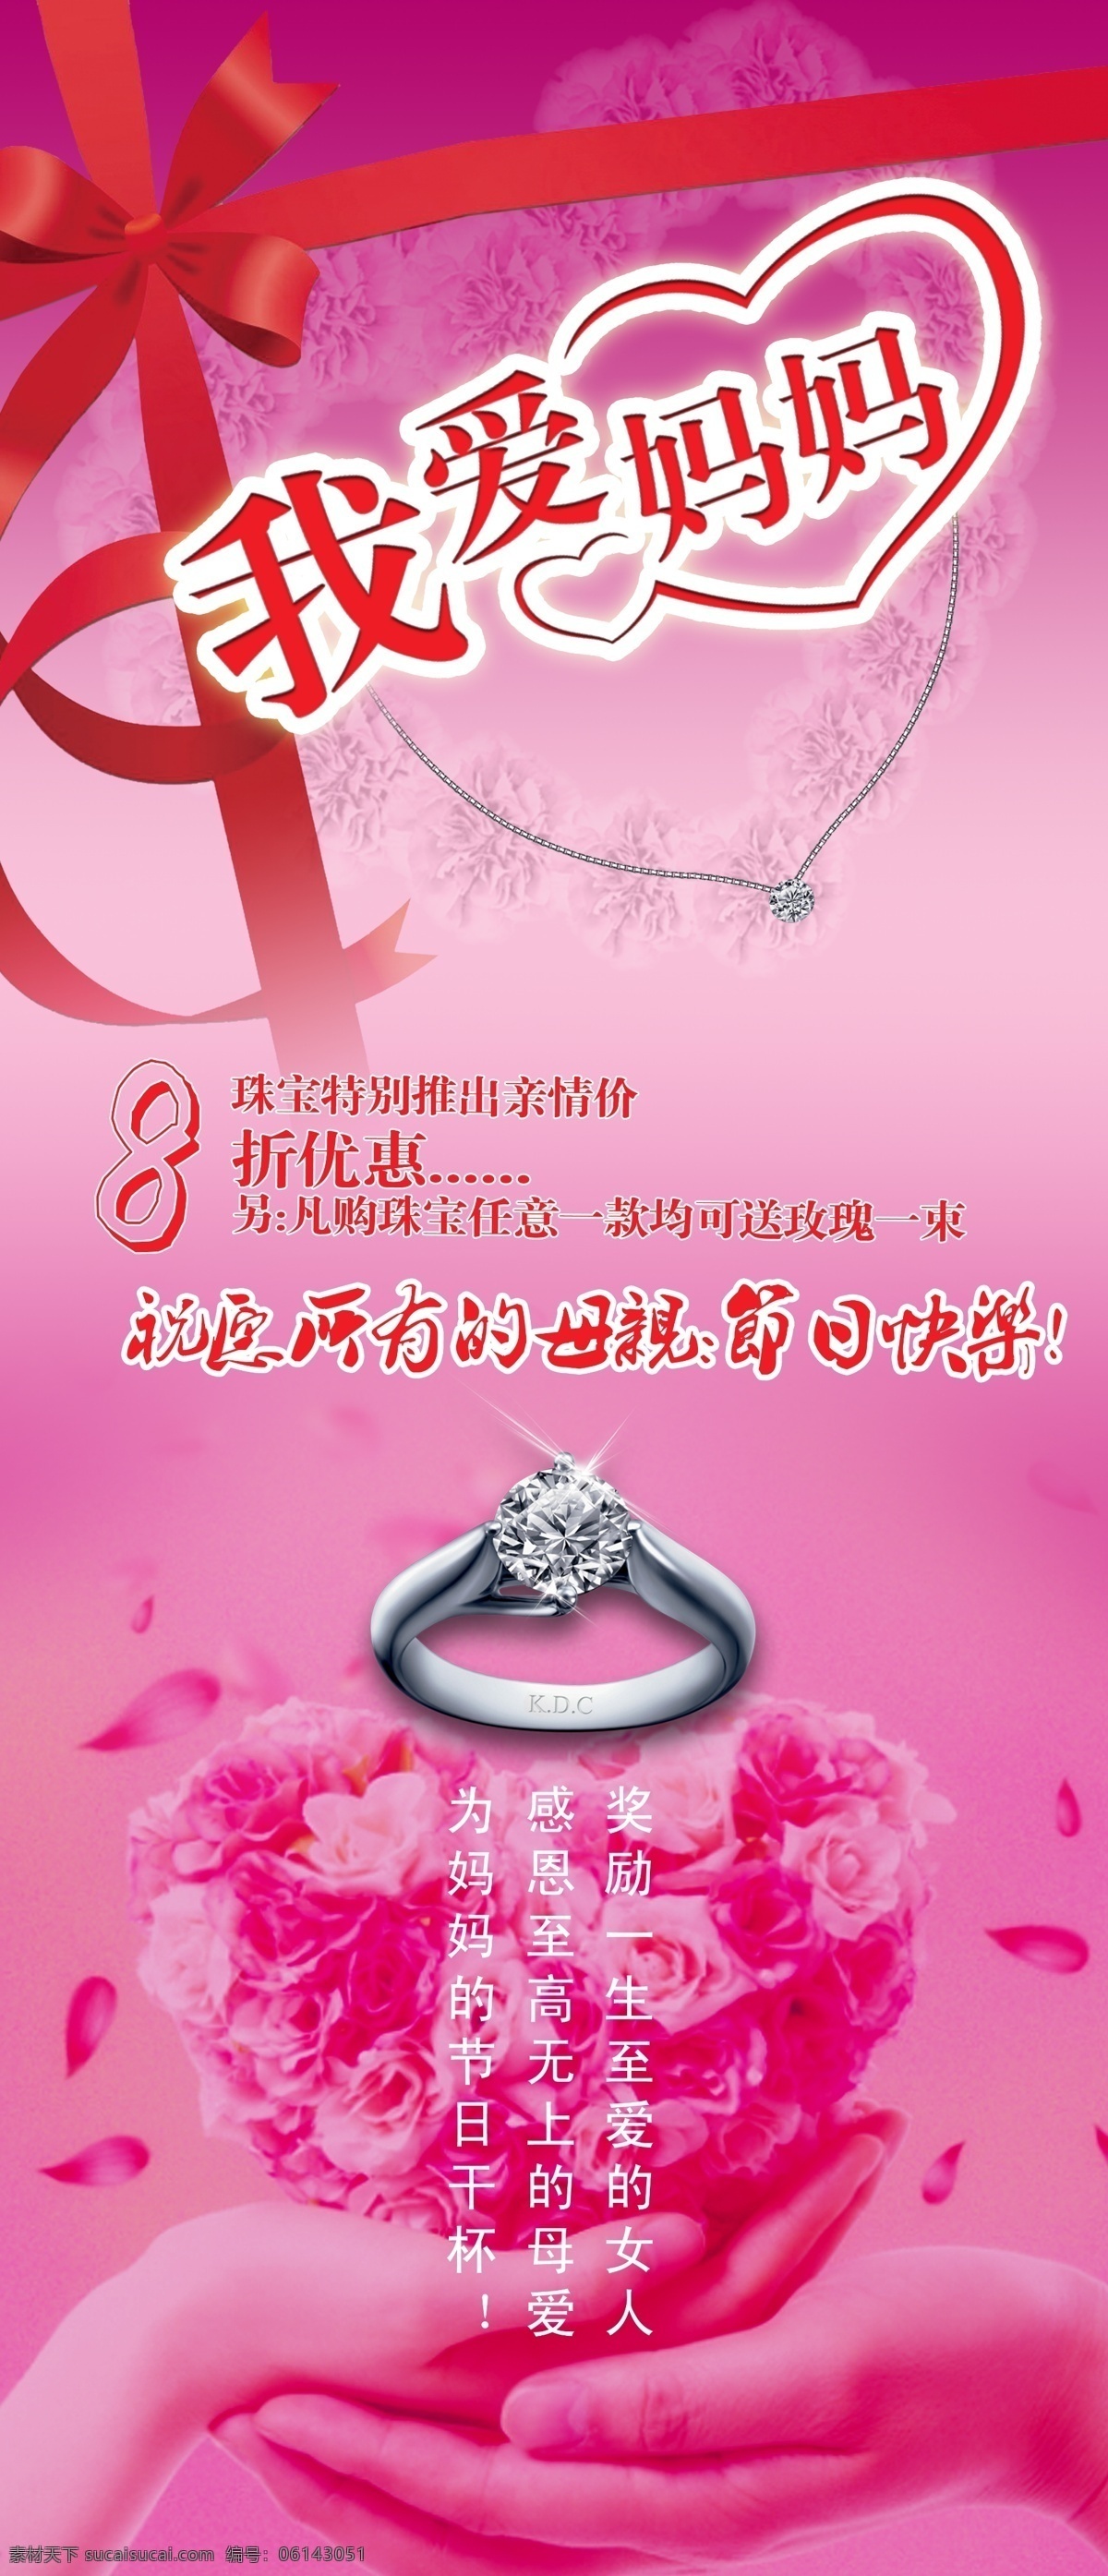 母亲节 促销海报 珠宝 项链 戒指 蝴蝶结 丝带 花环 心形 花瓣 粉色